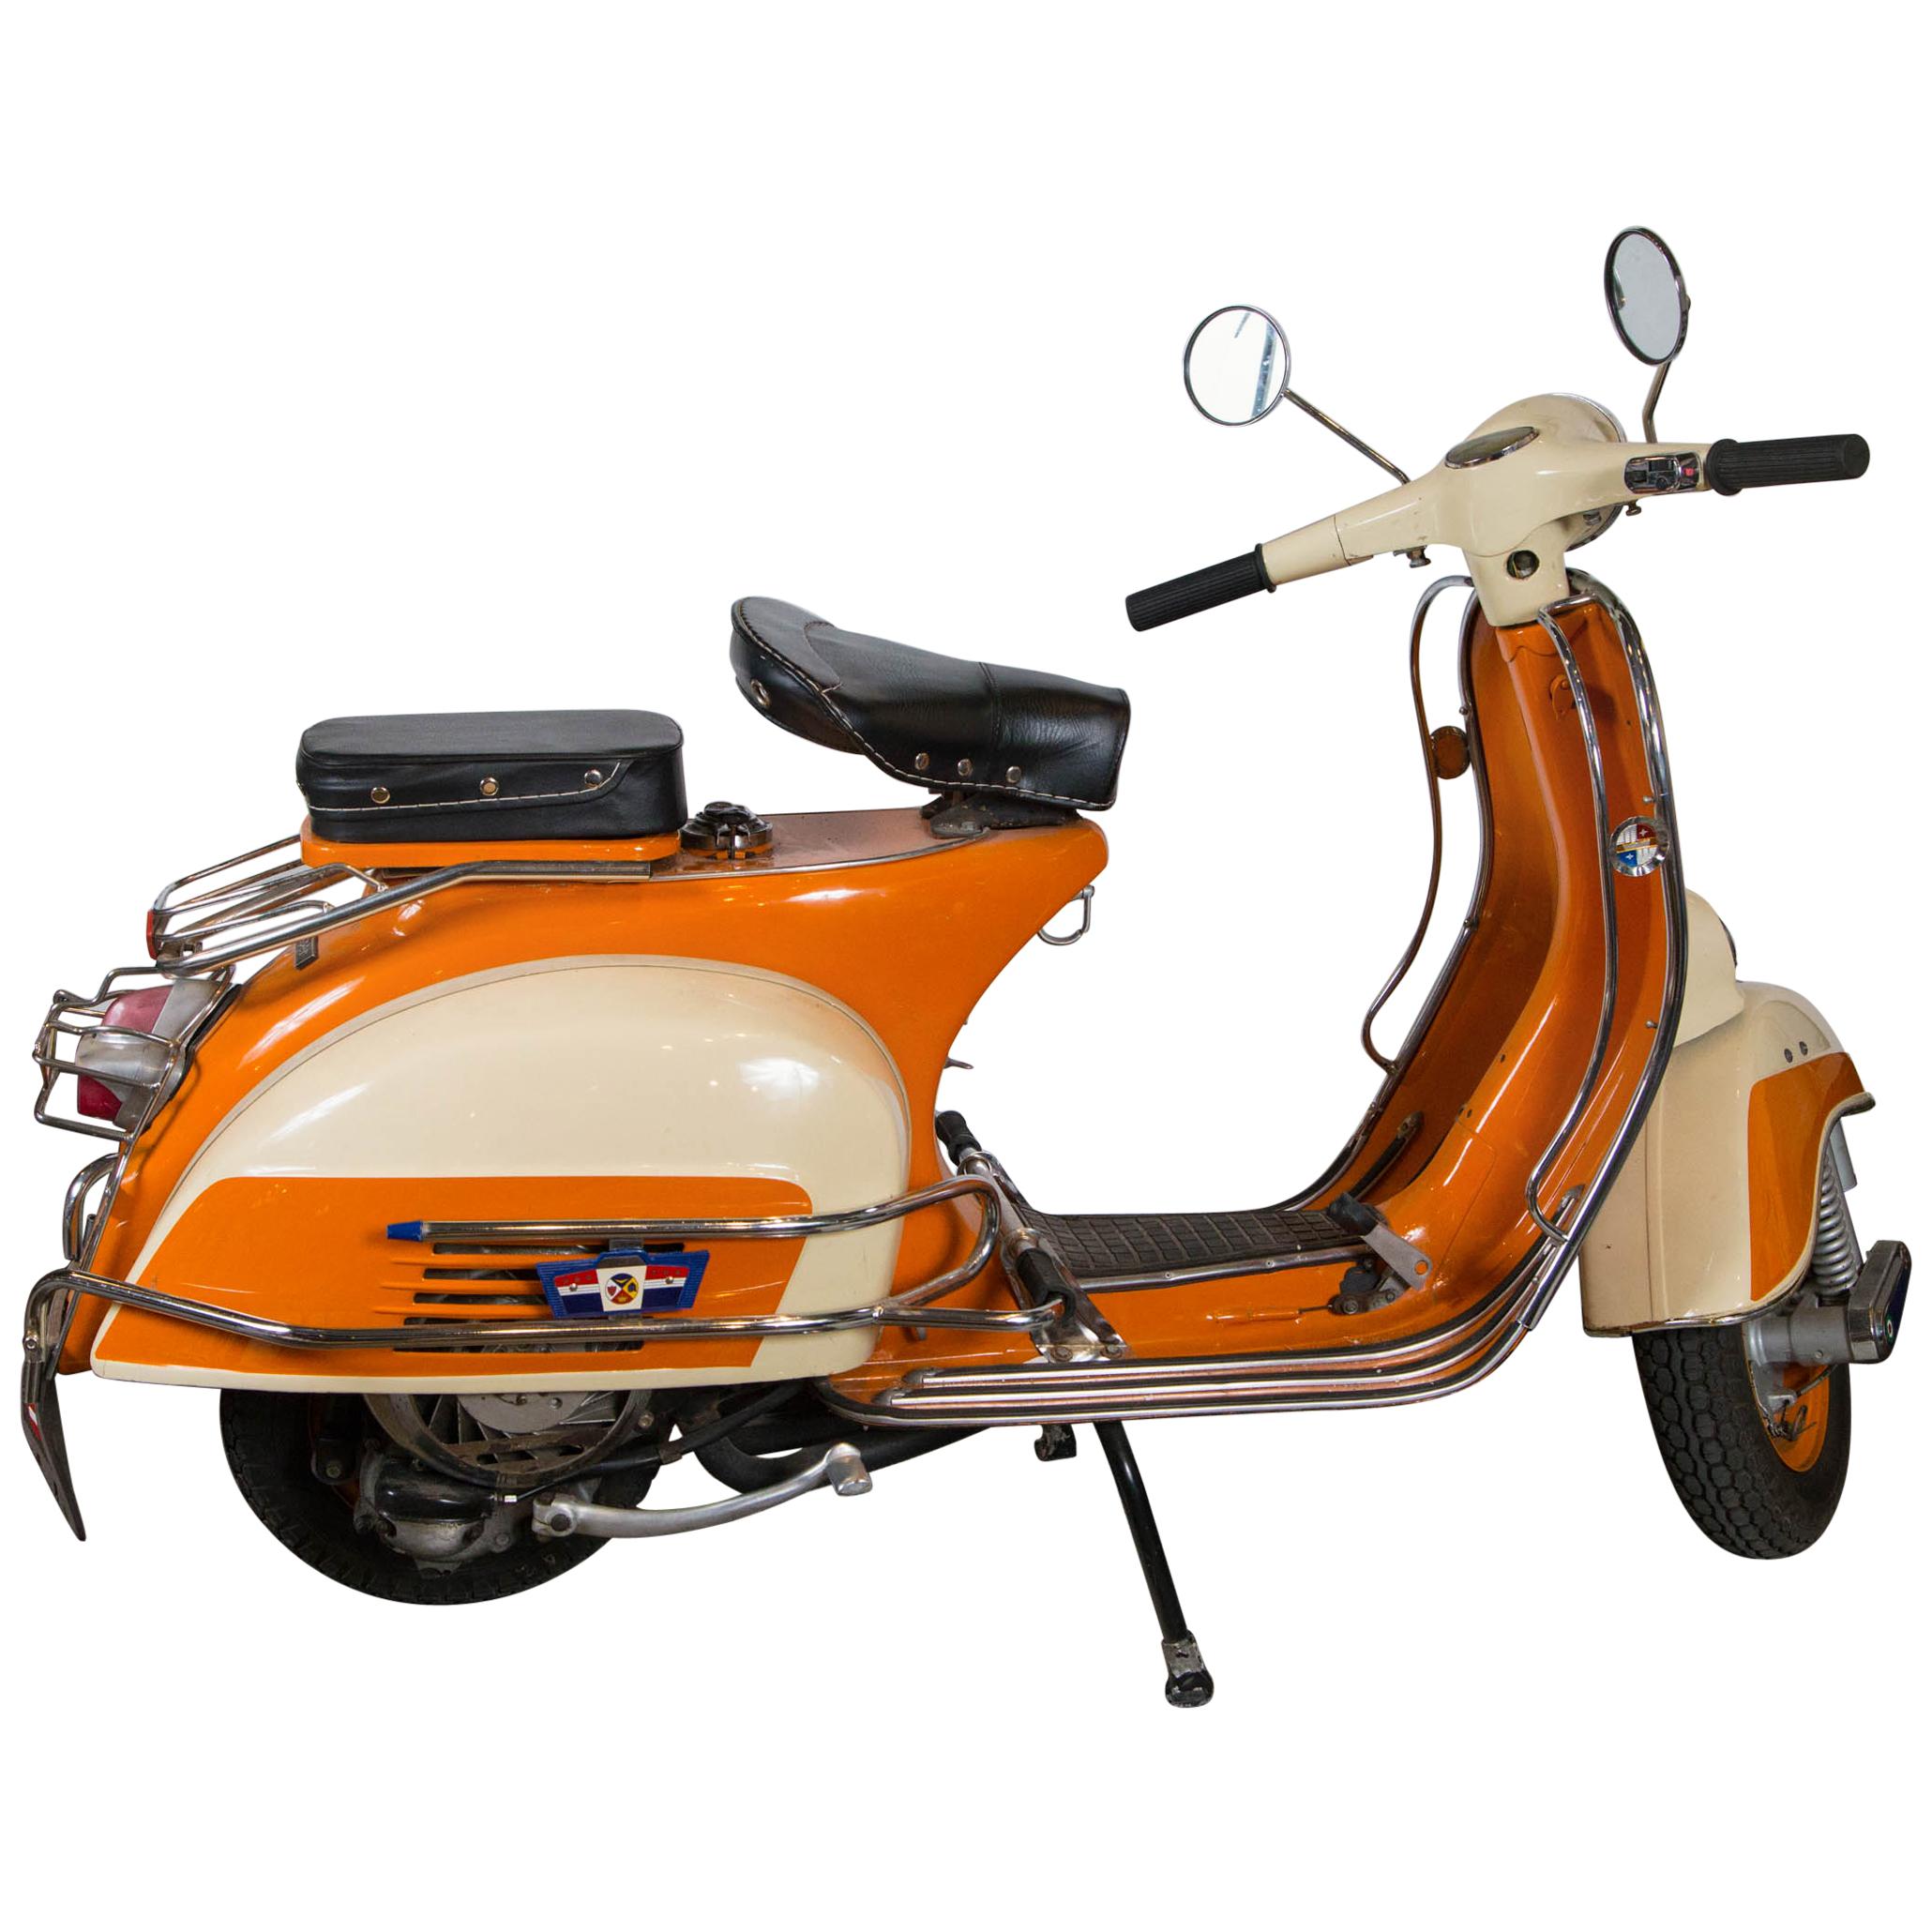 Orange Vespa circa 1960s Scooter